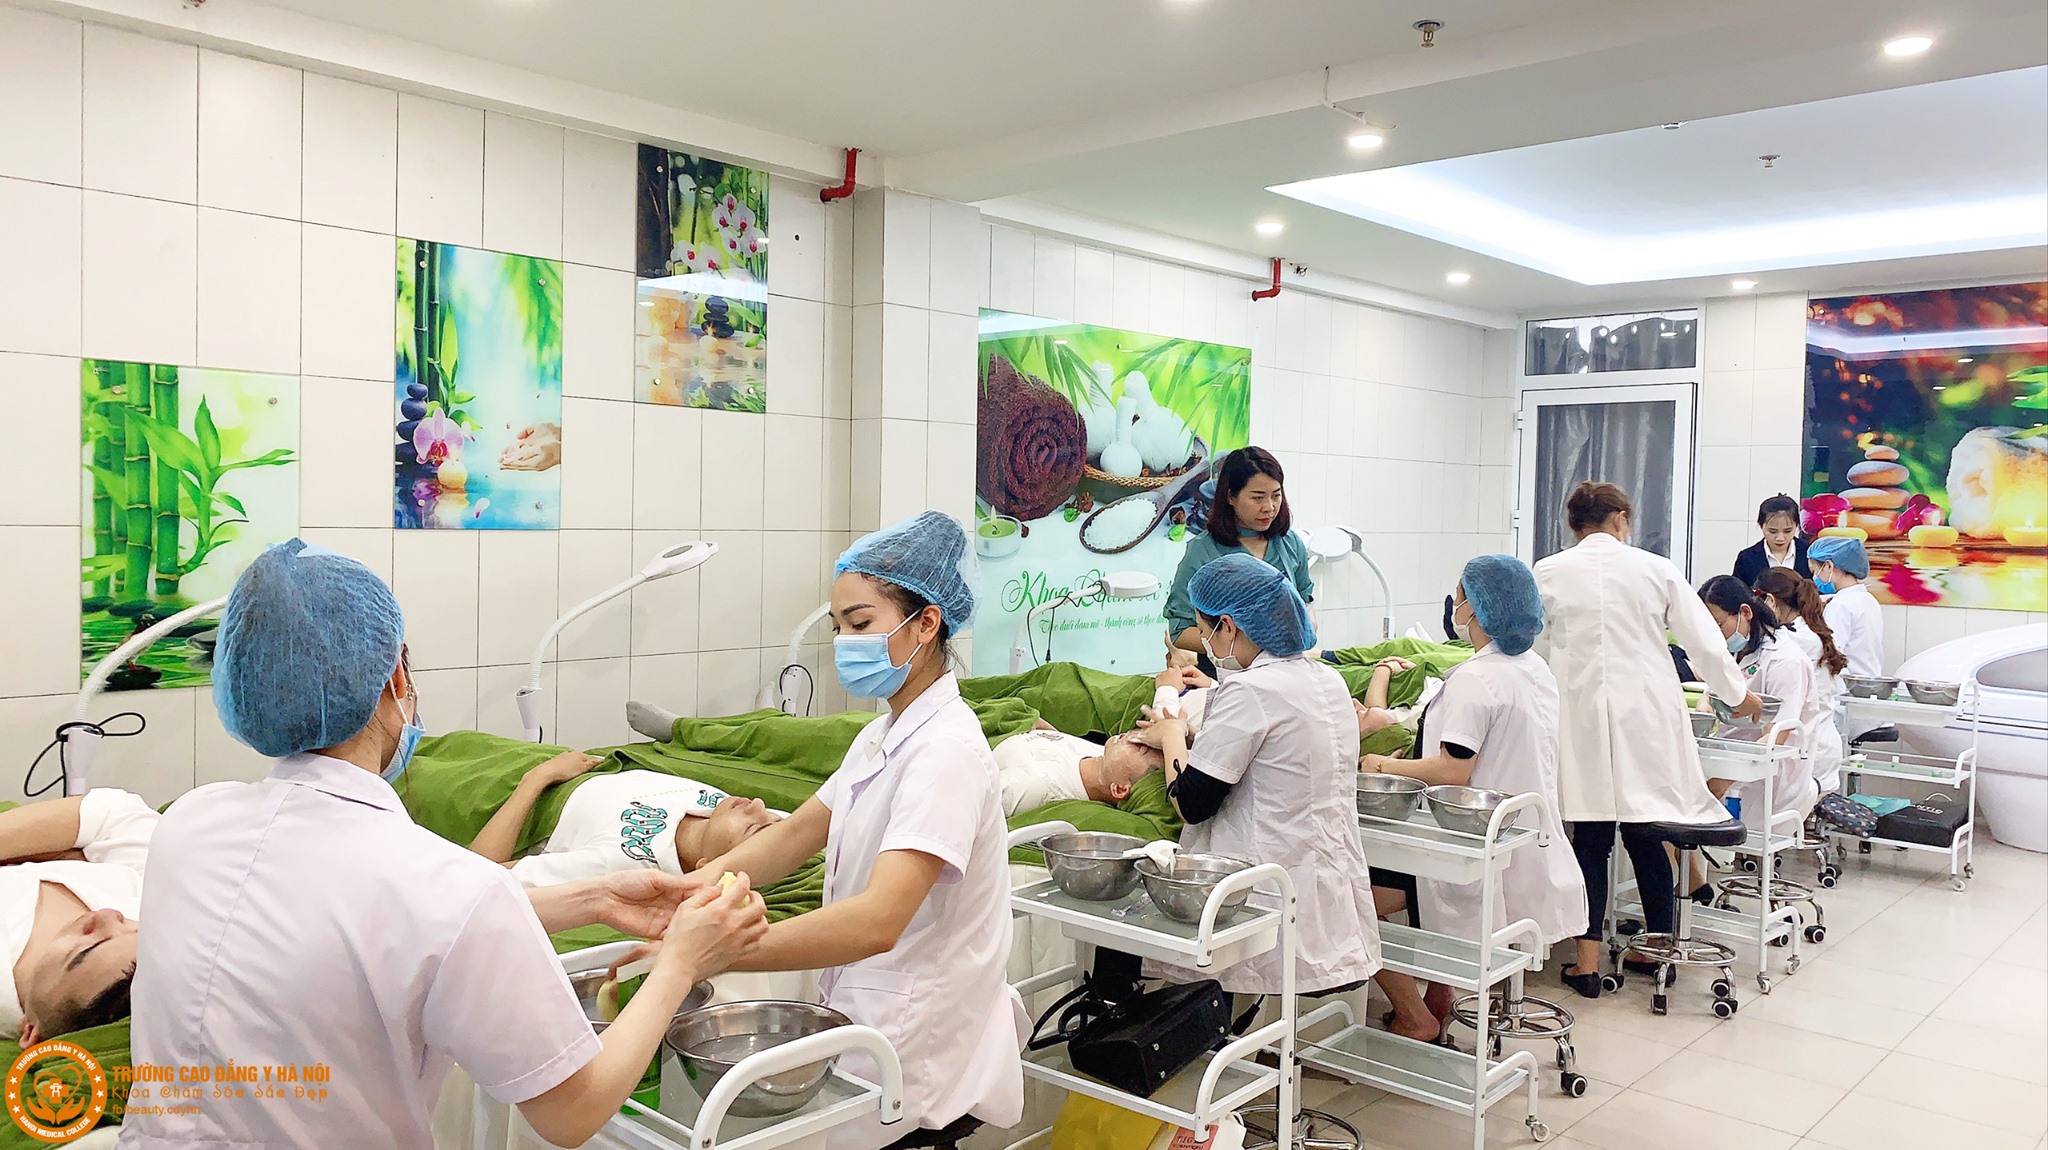 Trường cao đẳng đào tạo ngành chăm sóc sắc đẹp uy tín nhất Hà Nội